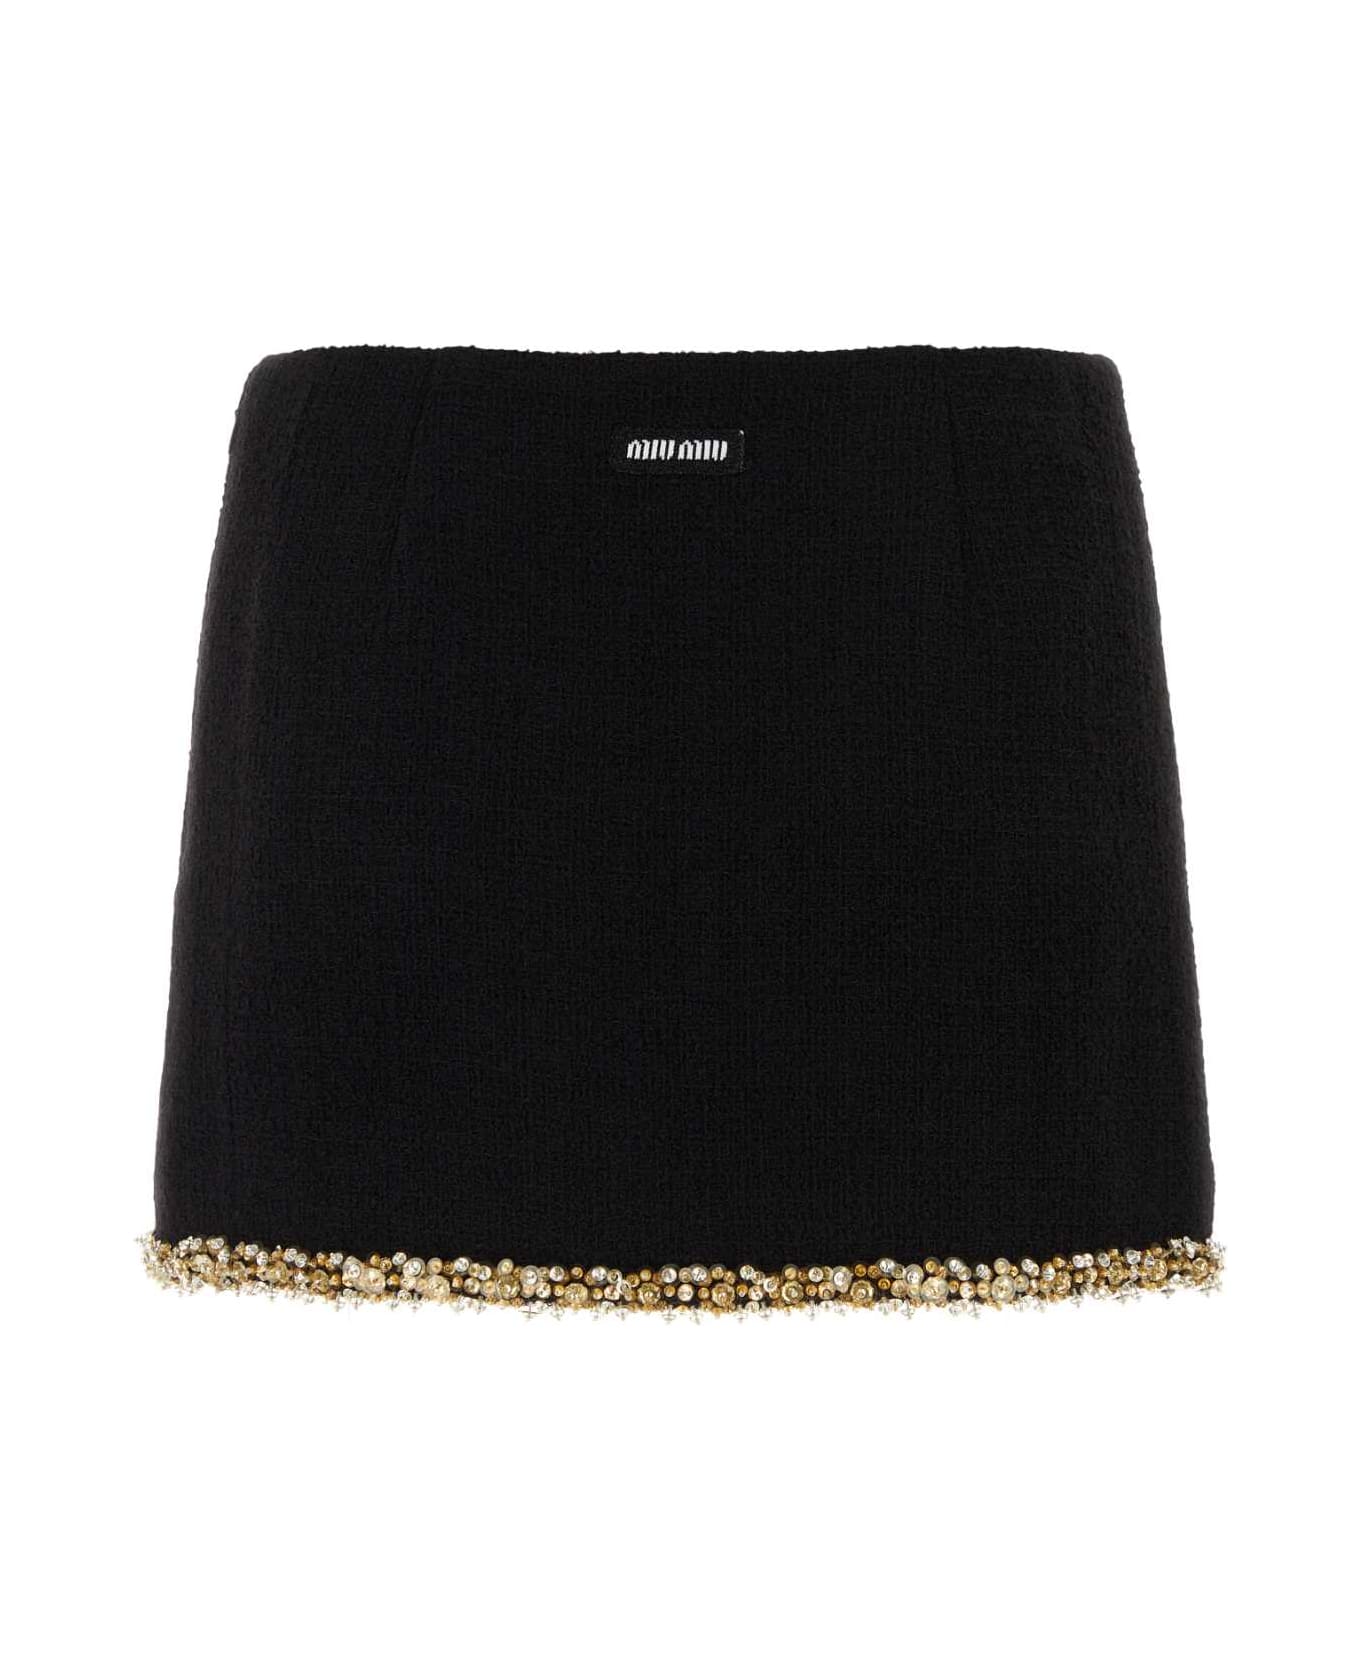 Miu Miu Black Tweed Mini Skirt - NERO スカート